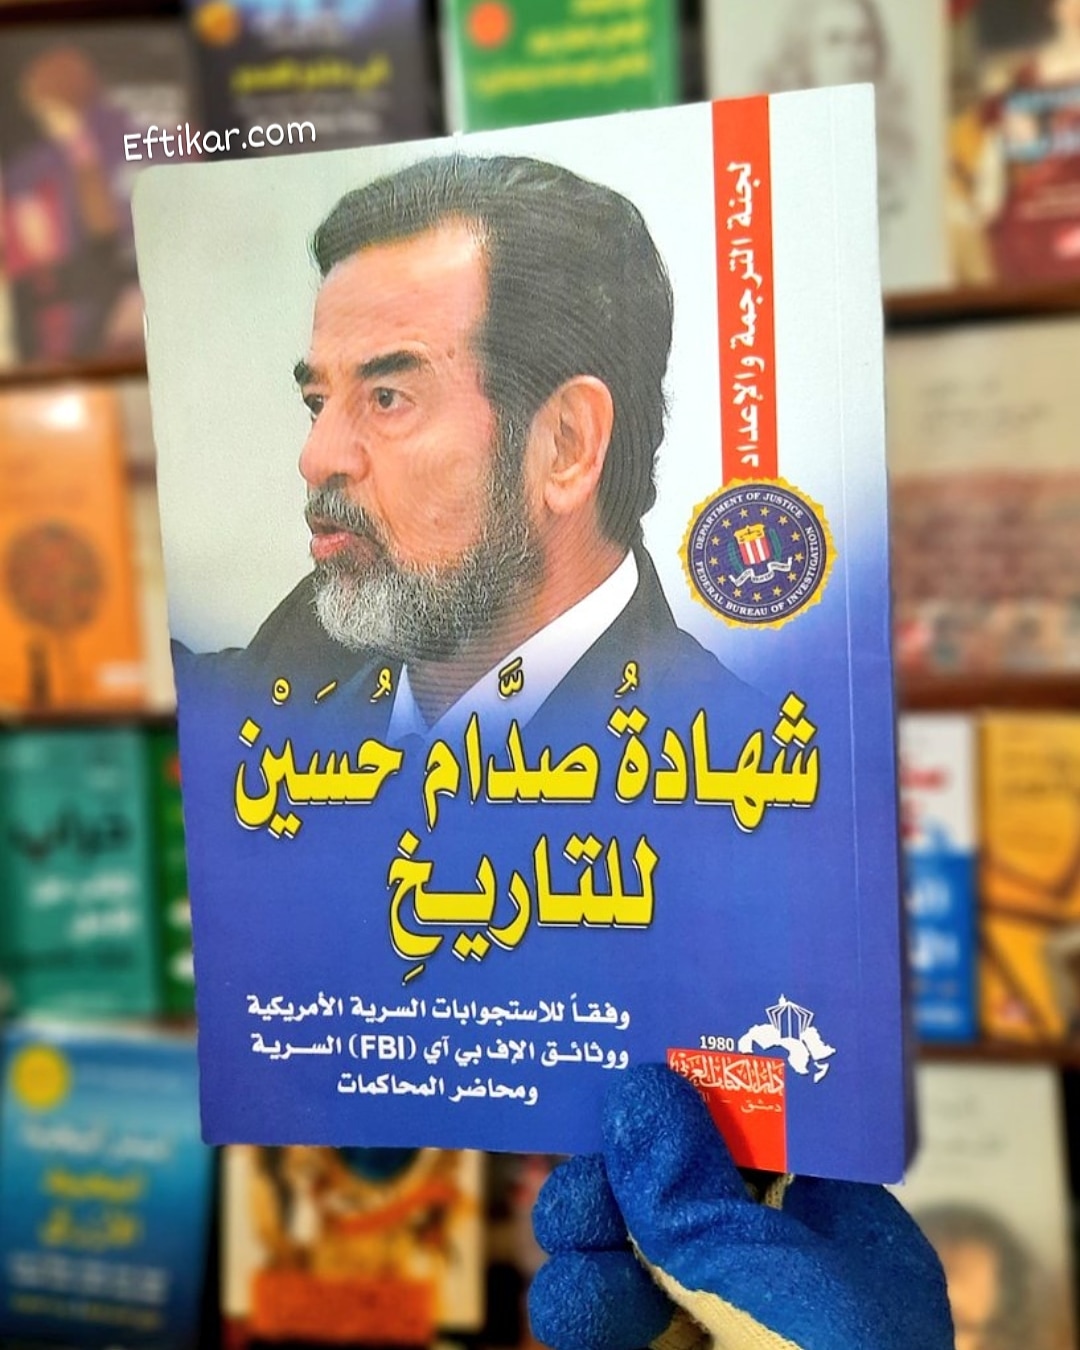 صدام حسين.. كتب تناولت حياة وموت الرئيس العراقى الراحل - اليوم السابع